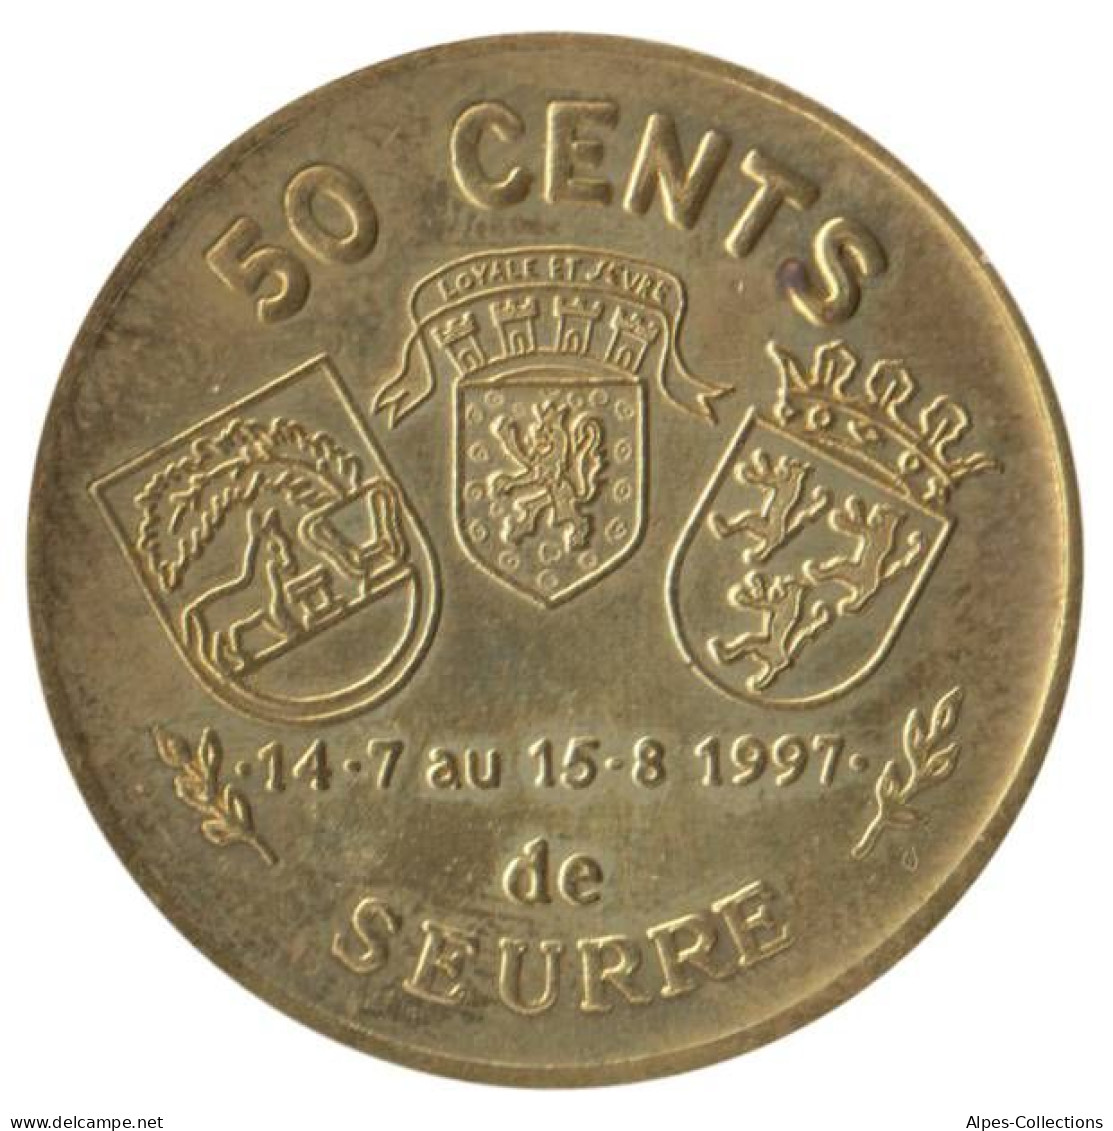 SEURRE - EU0005.1 - 50 CENTS EURO DES VILLES - Réf: NR- 1997 - Euros Des Villes